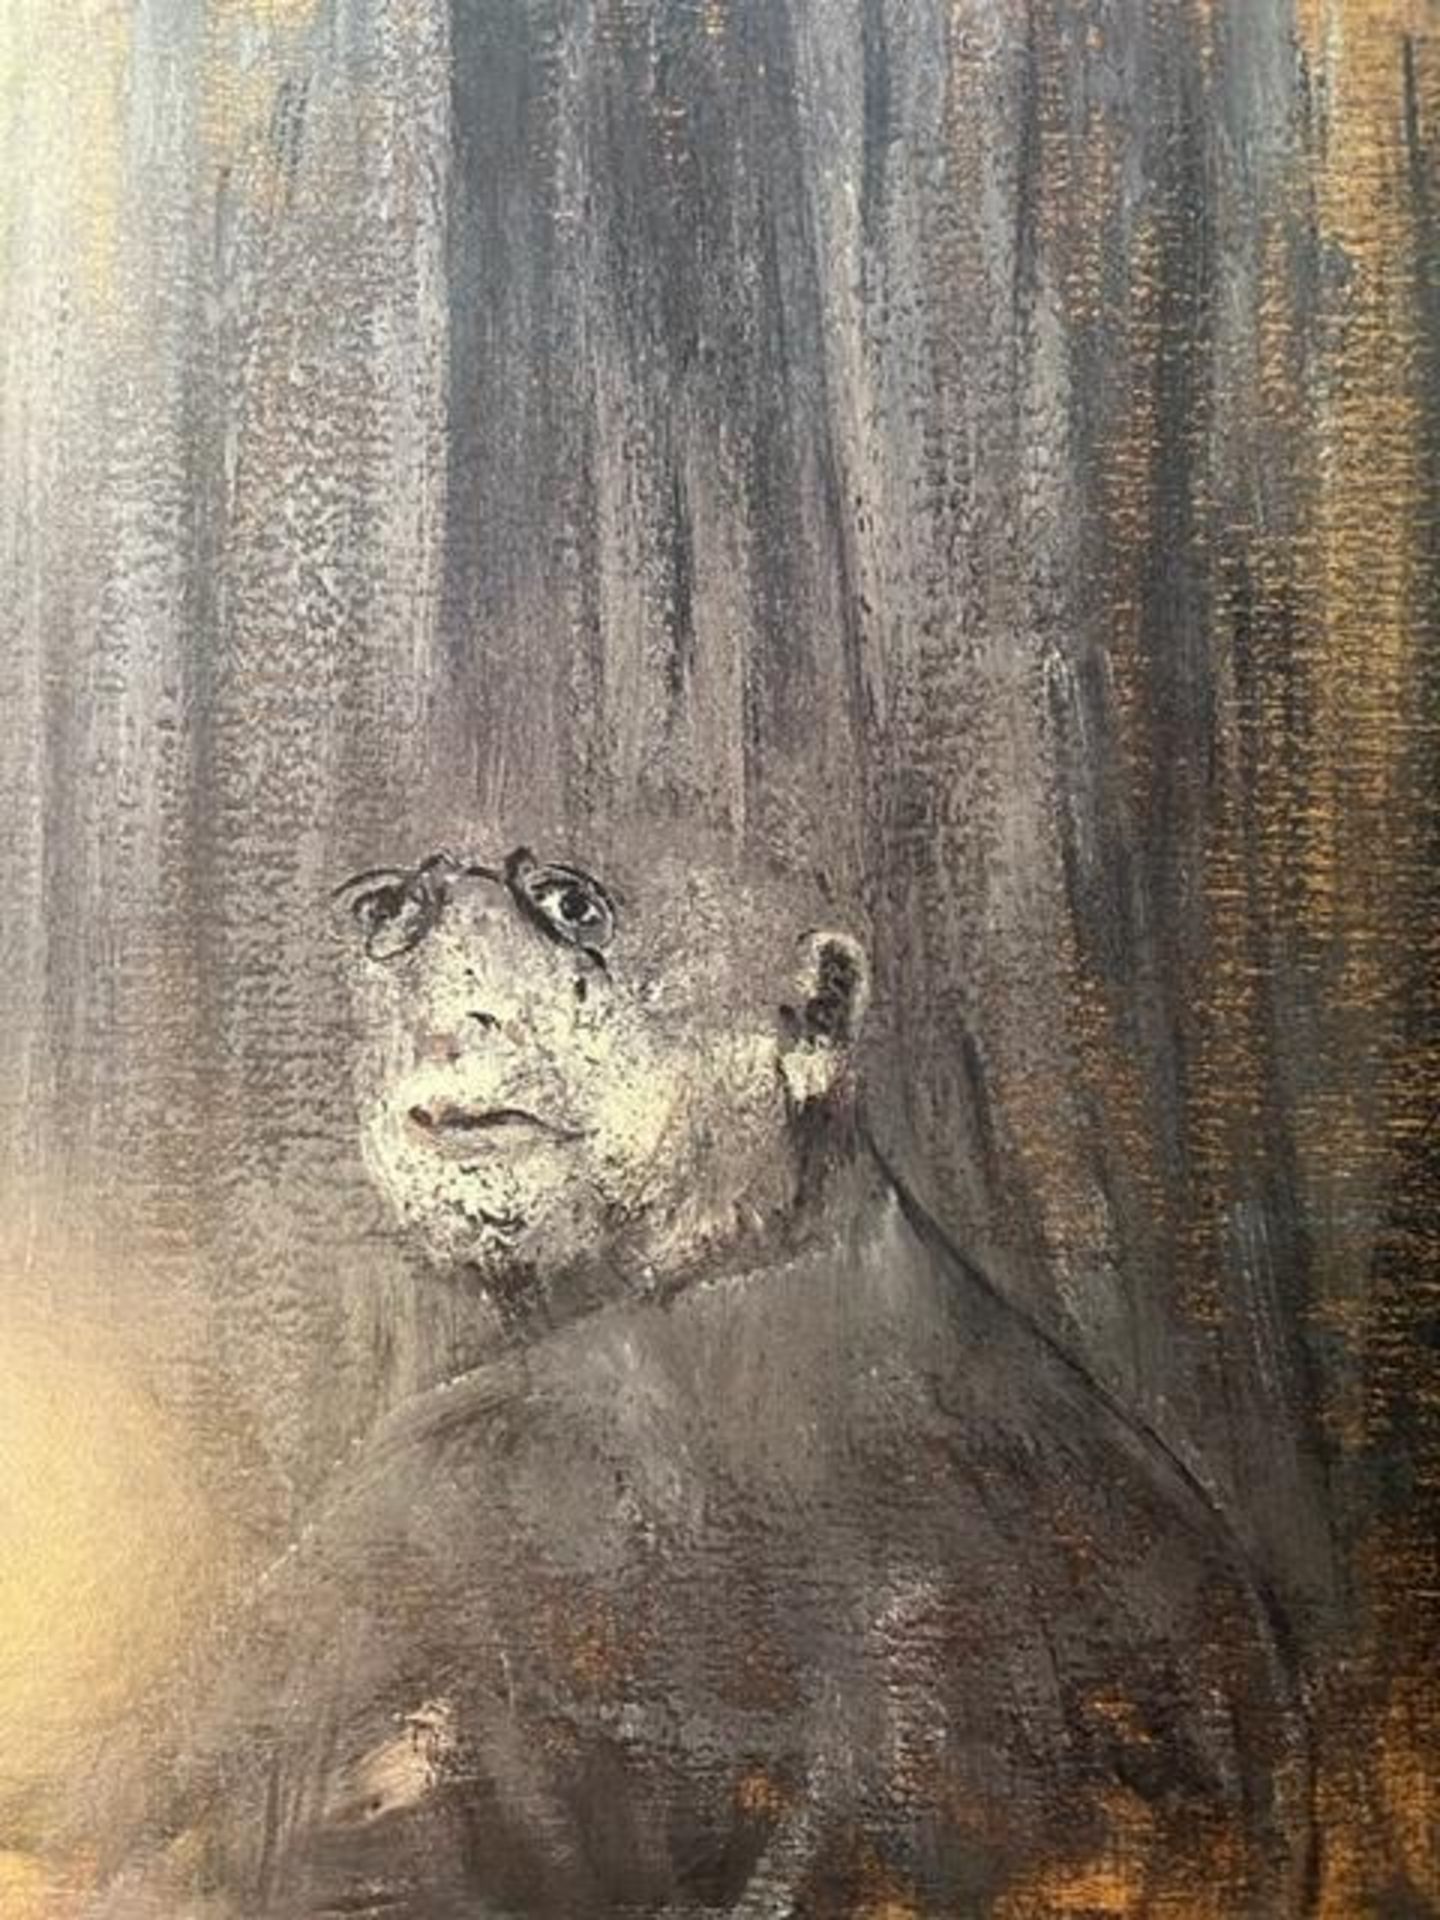 Francis Bacon "Head III" Print.